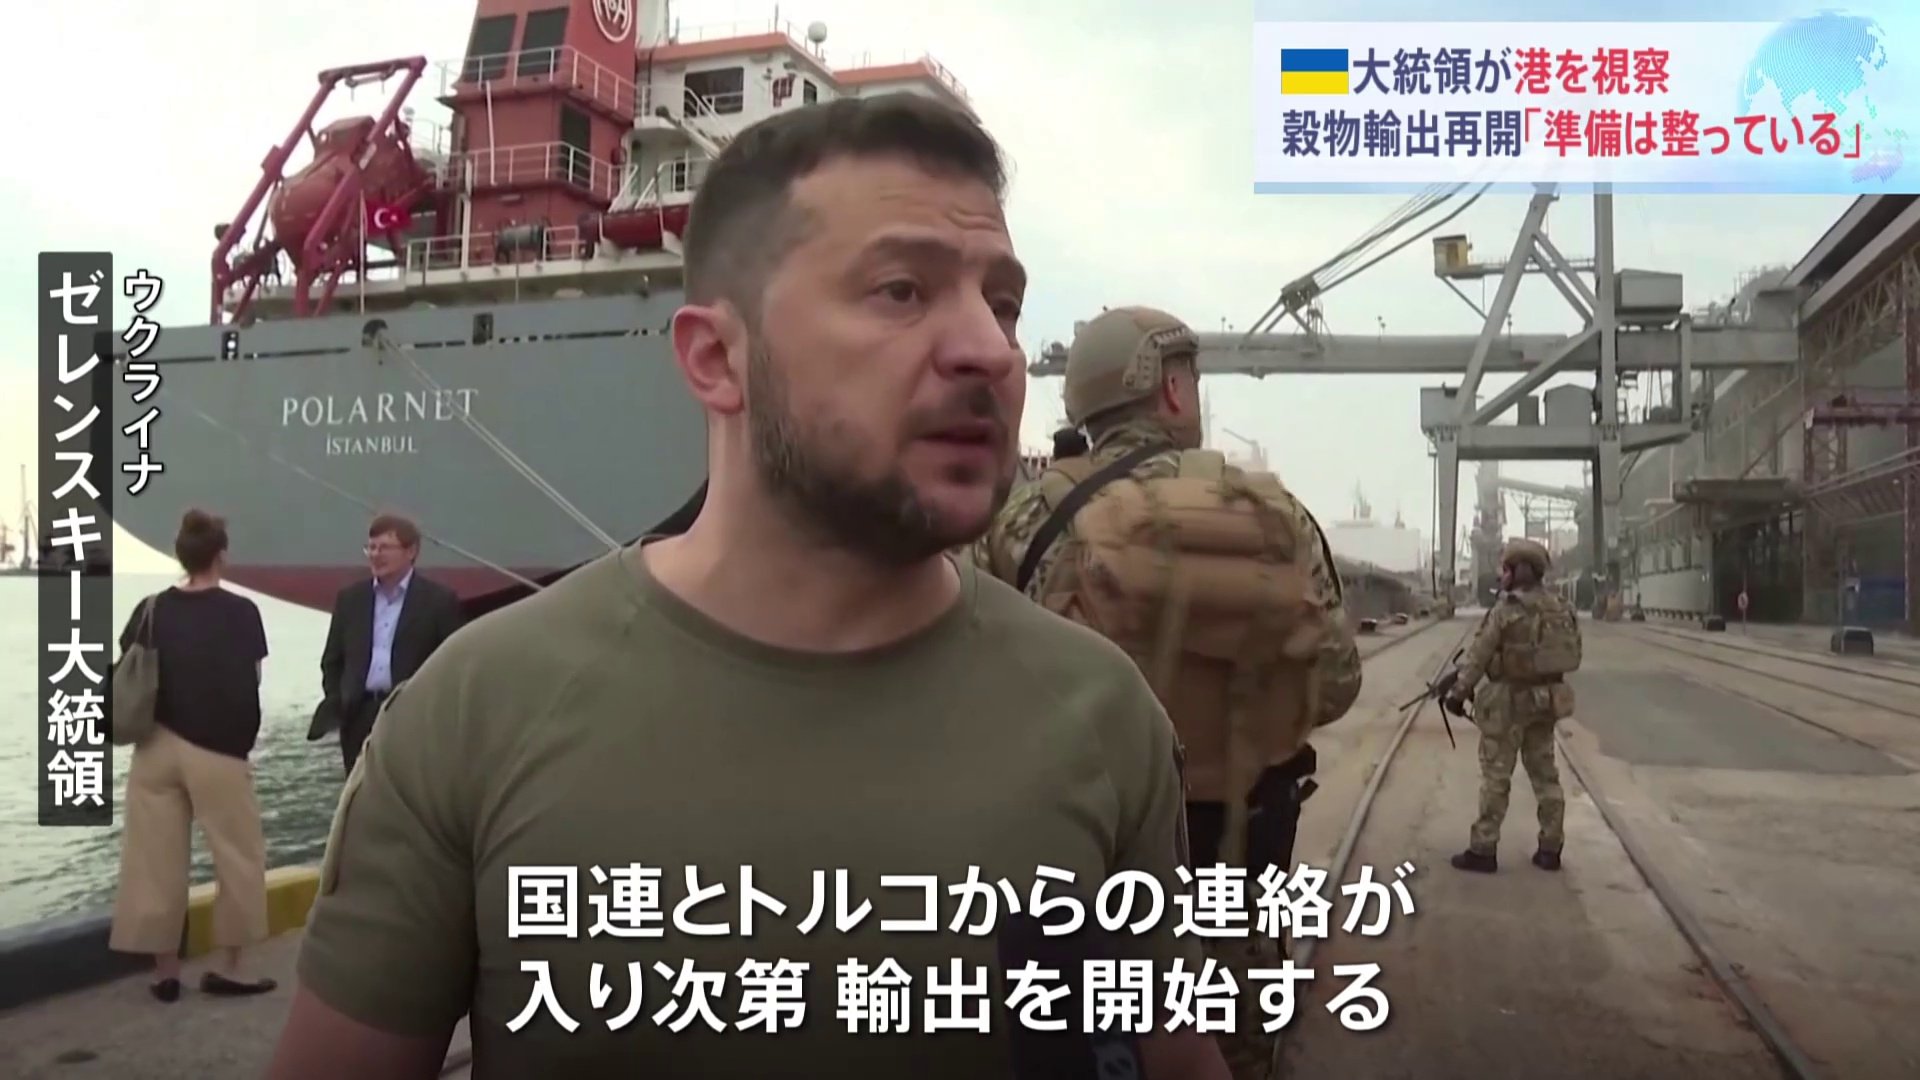 ゼレンスキー大統領が港視察「準備は完全に整っている」 拘置所でウクライナ人捕虜らが死亡 ゼレンスキー大統領「捕虜の集団殺害だ」と非難